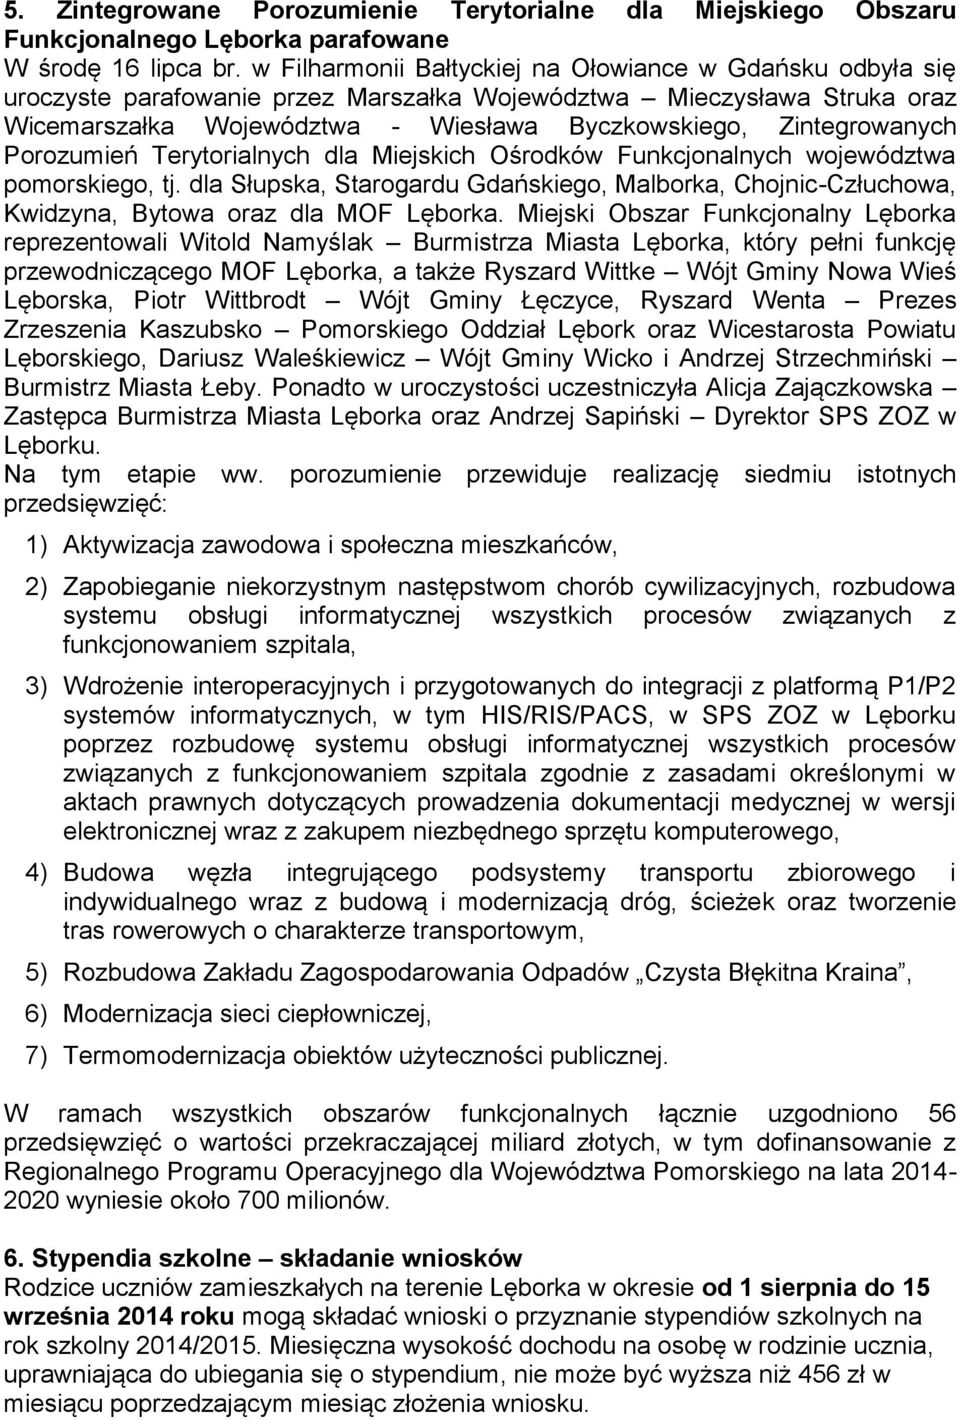 Porozumień Terytorialnych dla Miejskich Ośrodków Funkcjonalnych województwa pomorskiego, tj. dla Słupska, Starogardu Gdańskiego, Malborka, Chojnic-Człuchowa, Kwidzyna, Bytowa oraz dla MOF Lęborka.